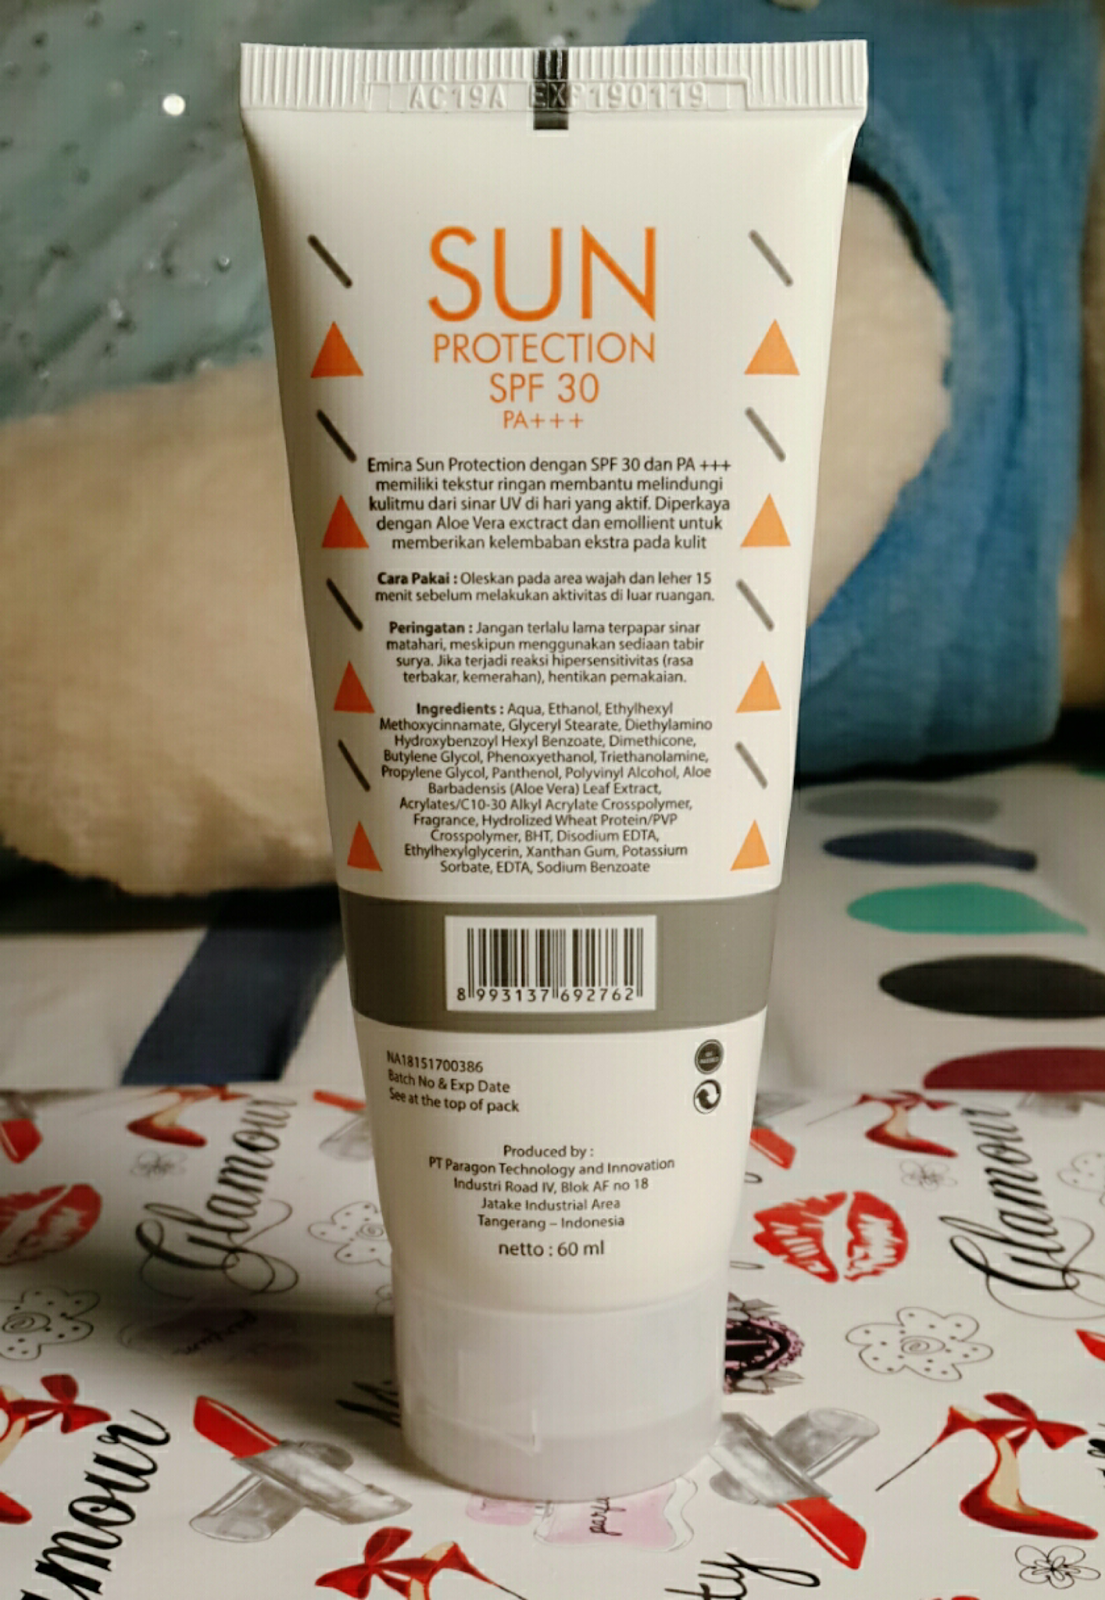 Sensitif sunscreen untuk kulit